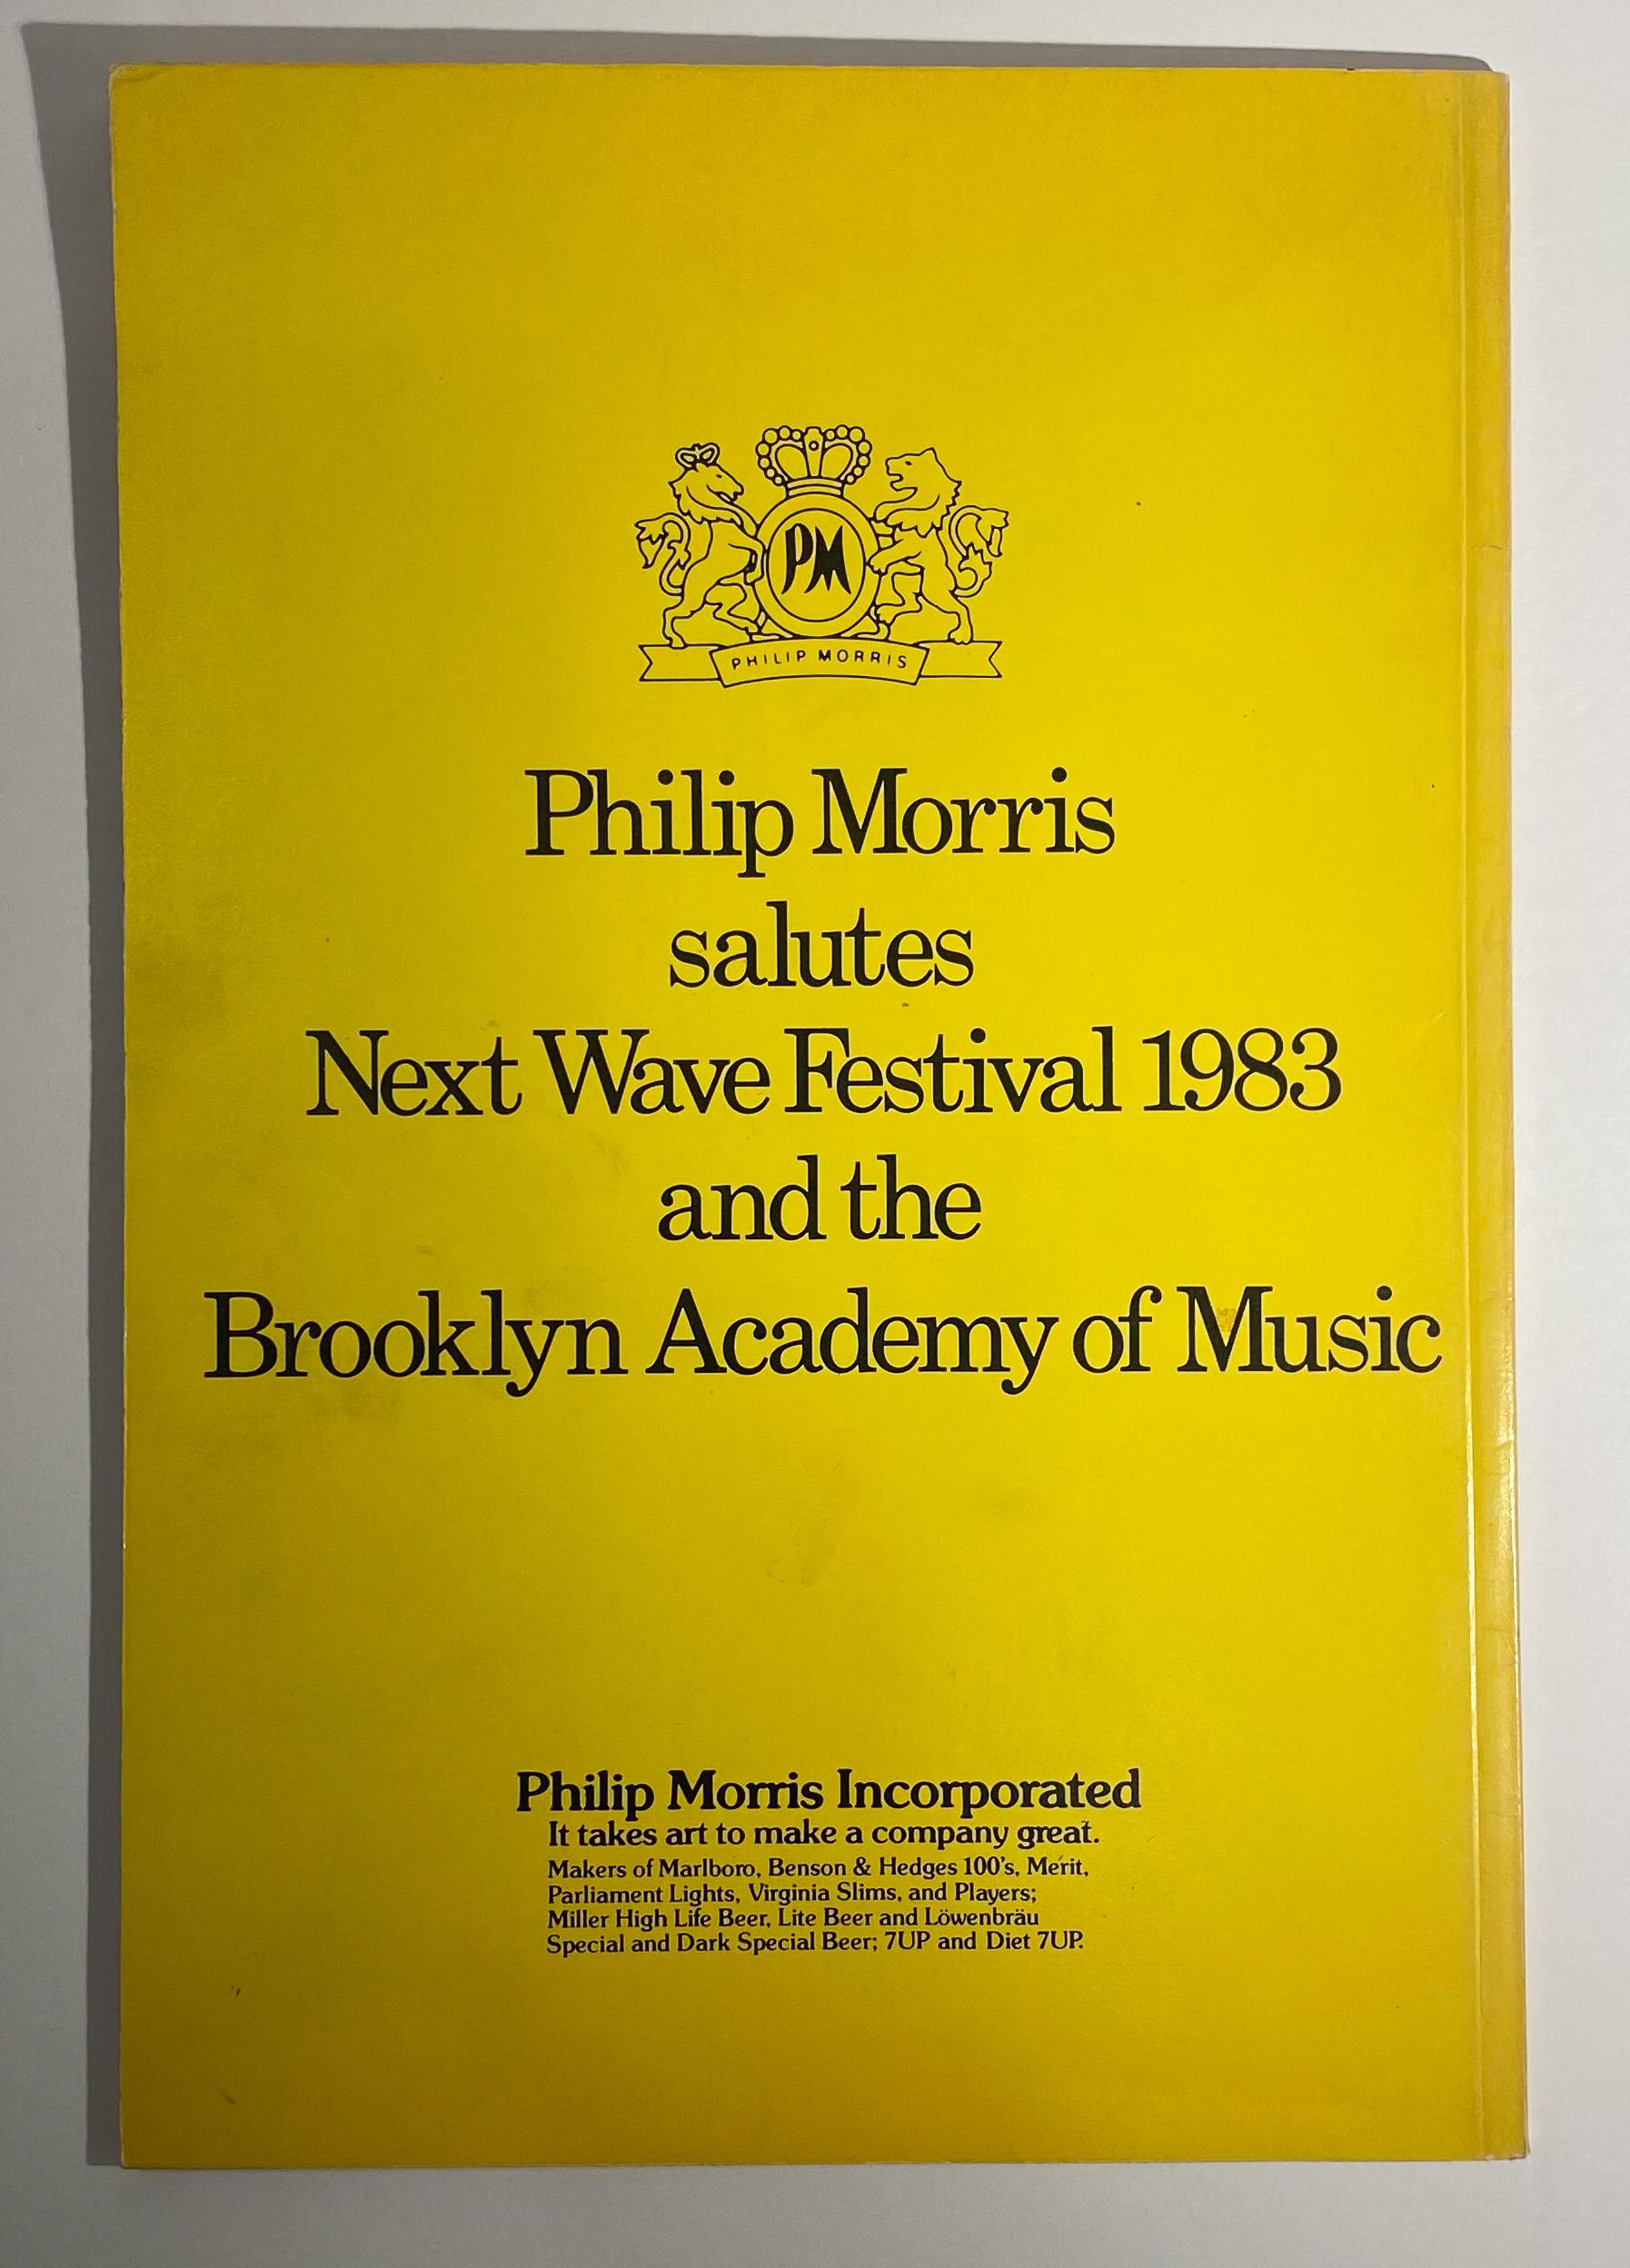 Catalogue du festival inaugural (ou premier festival officiel) Next Wave qui s'est tenu à la Brooklyn Academy of Music en 1983. 64 pages, 4to (8